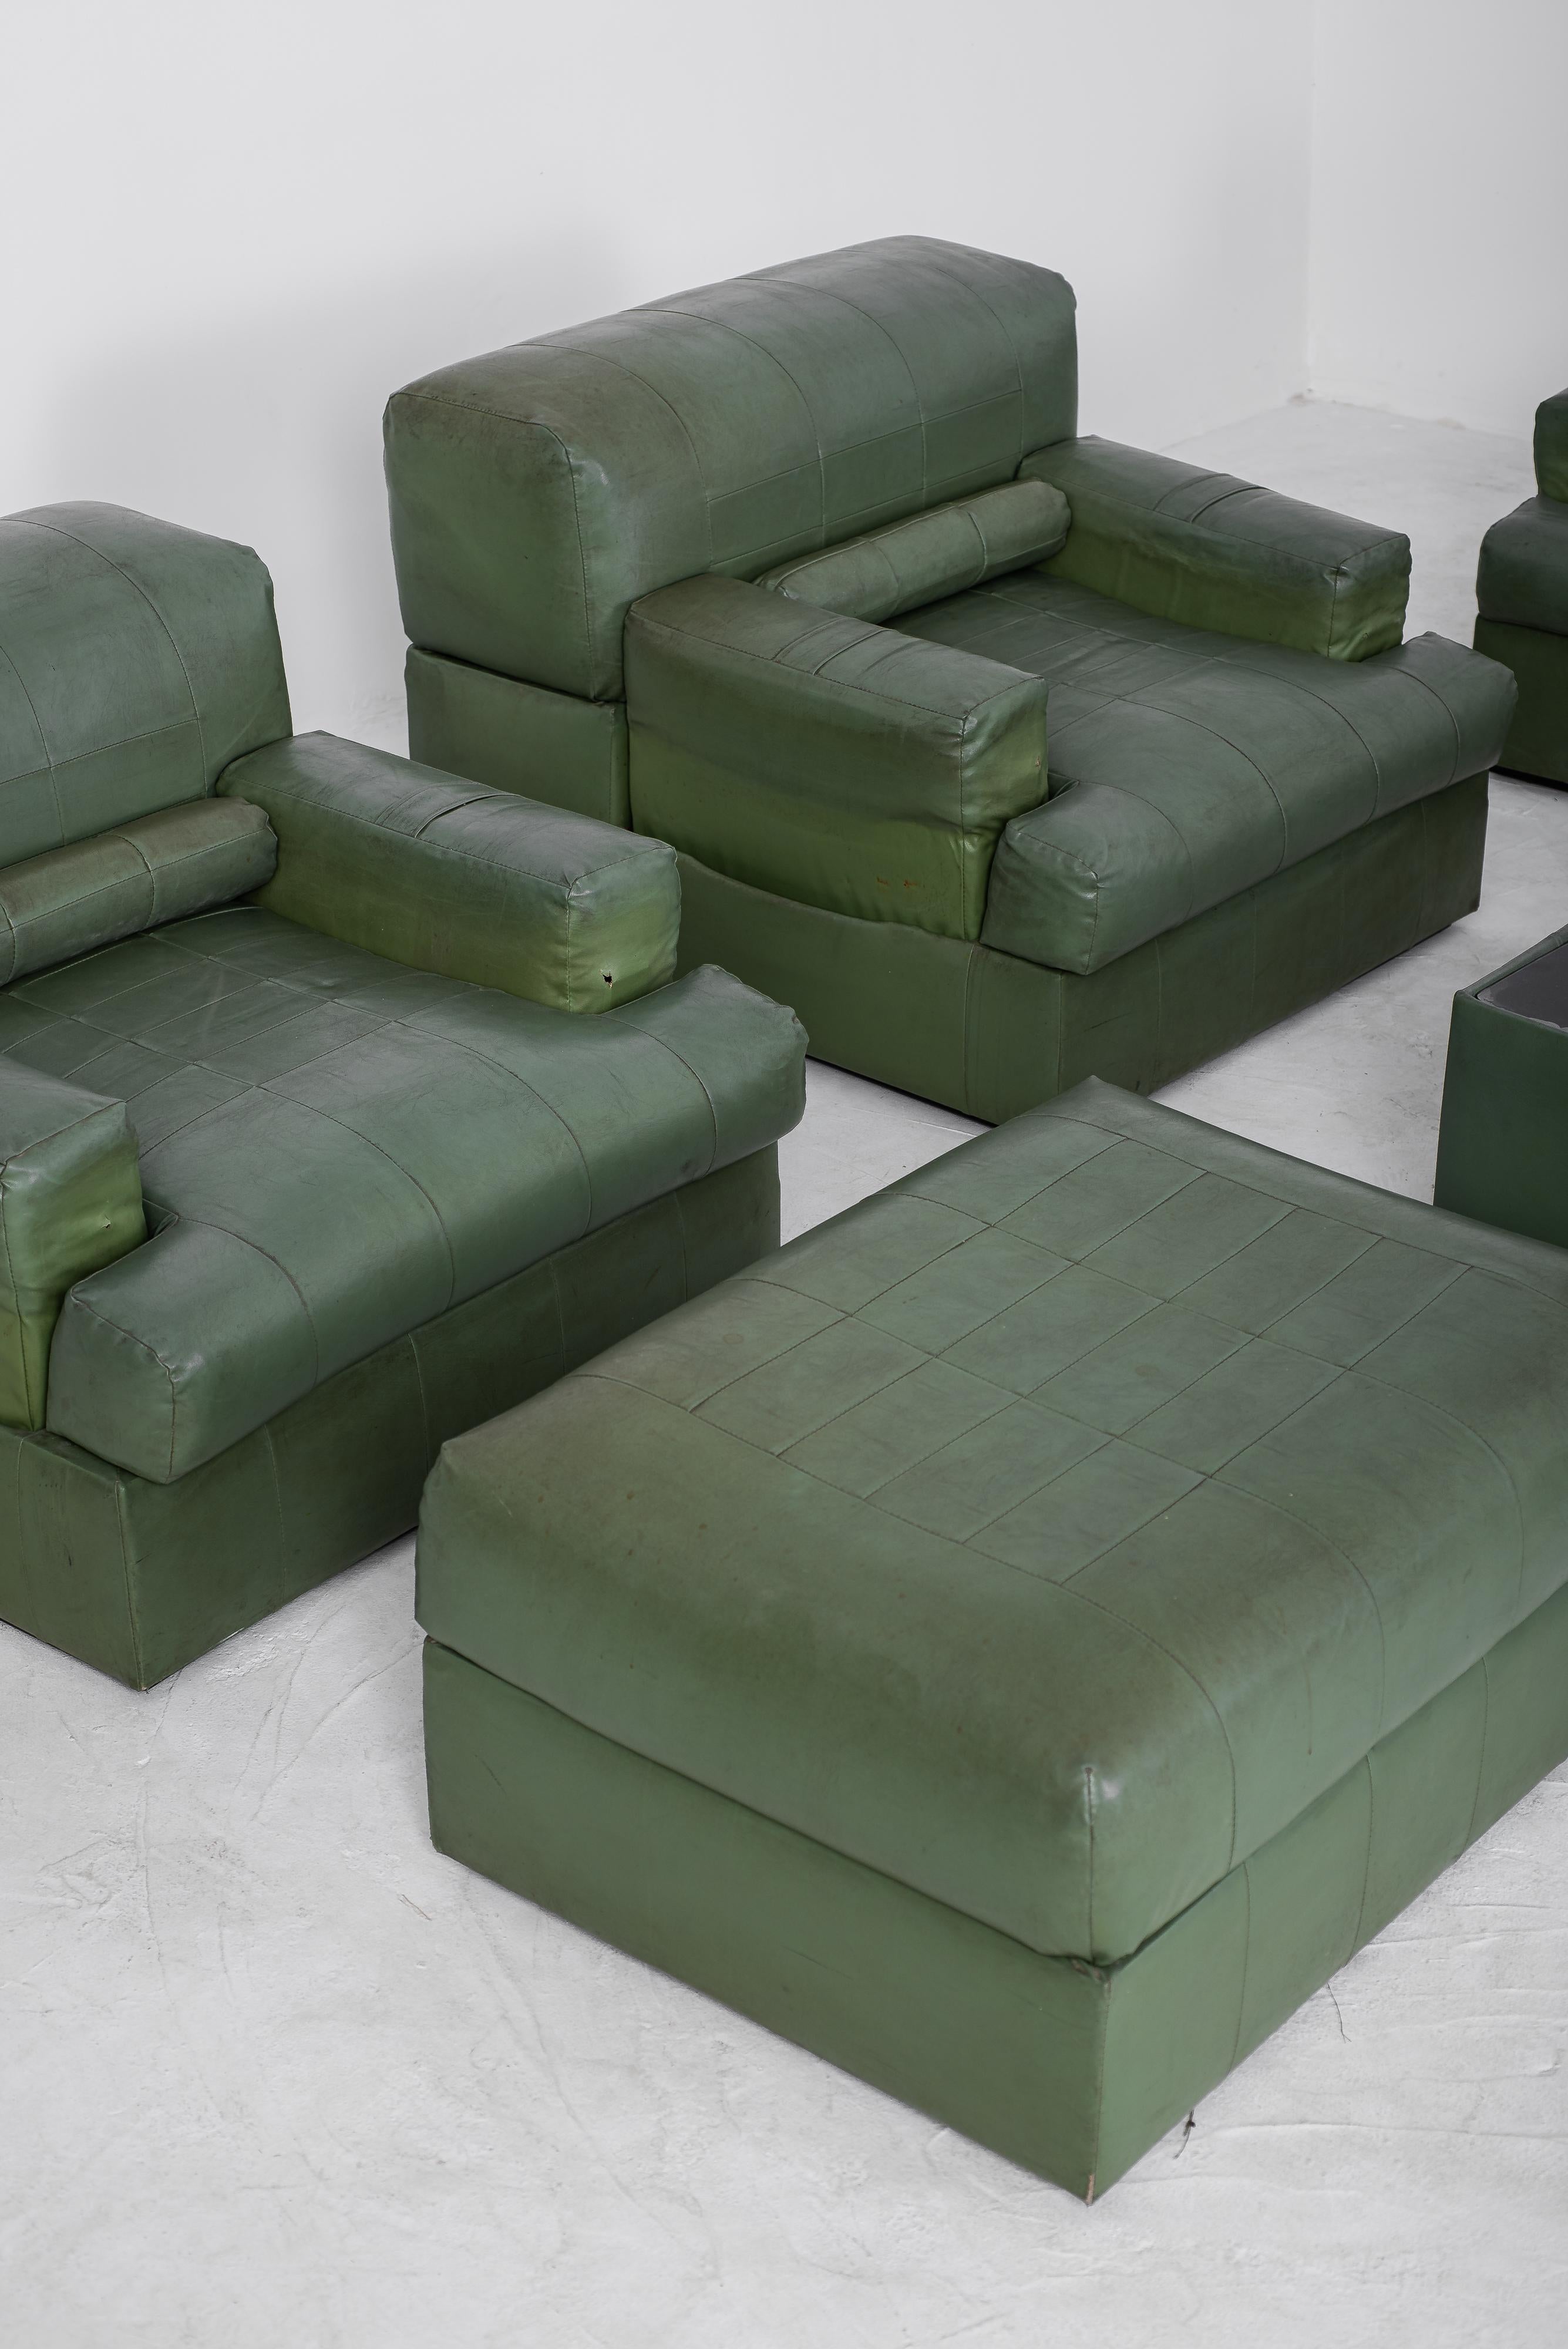 Fabriqué par le célèbre designer brésilien Percival Lafer, ce canapé exceptionnel, rare et captivant est un témoignage de rareté et de beauté. Sa conception modulaire présente une caractéristique remarquable : des supports de bras rétractables qui